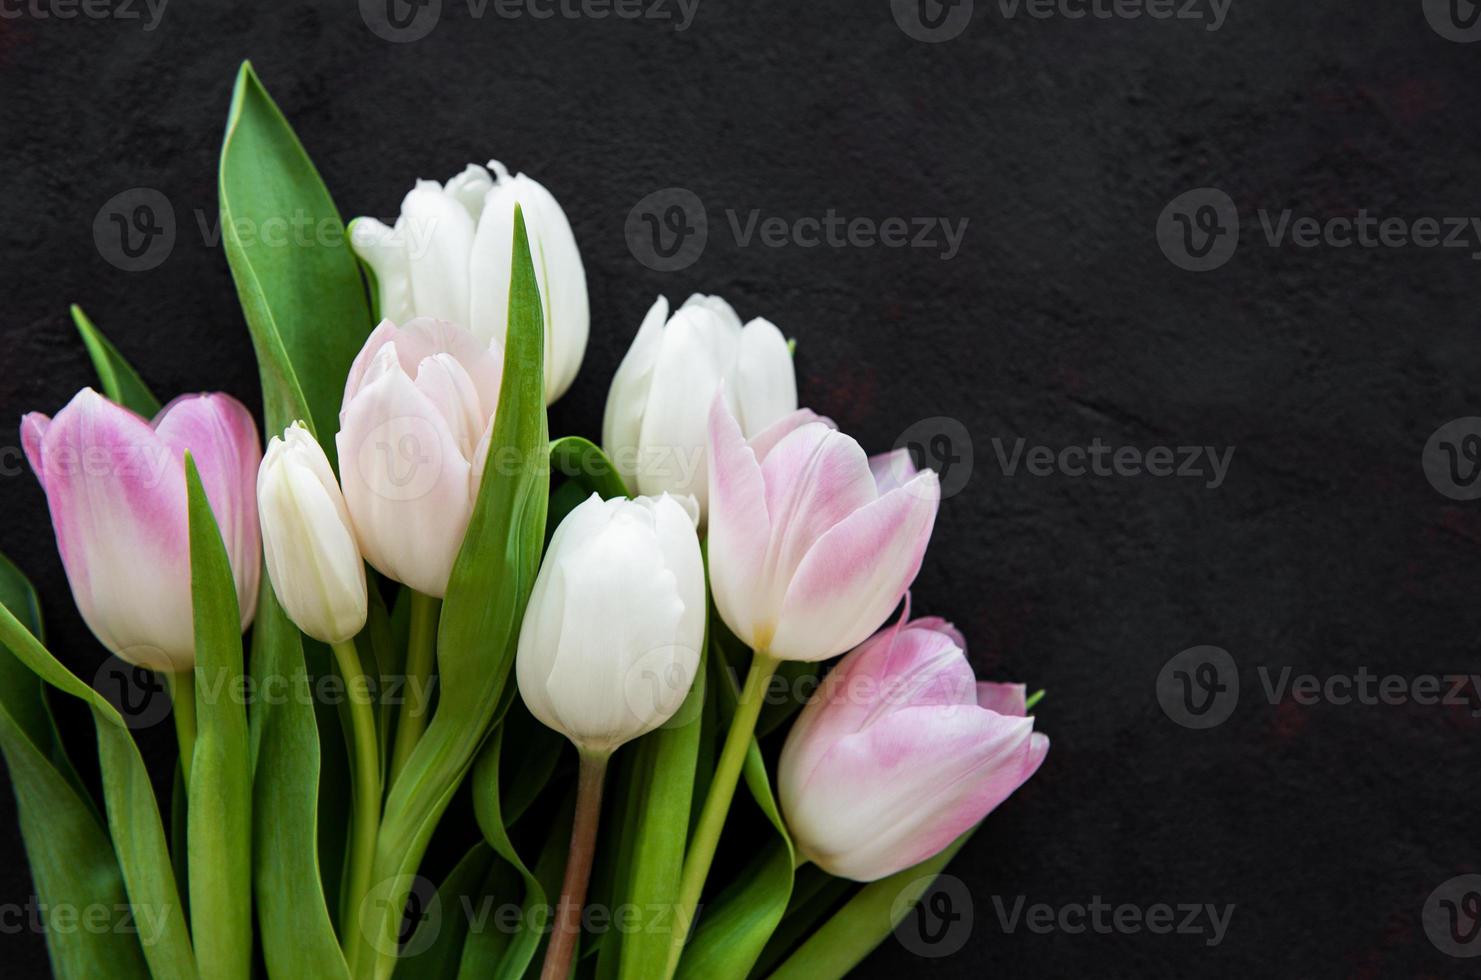 tulipes de printemps rose photo